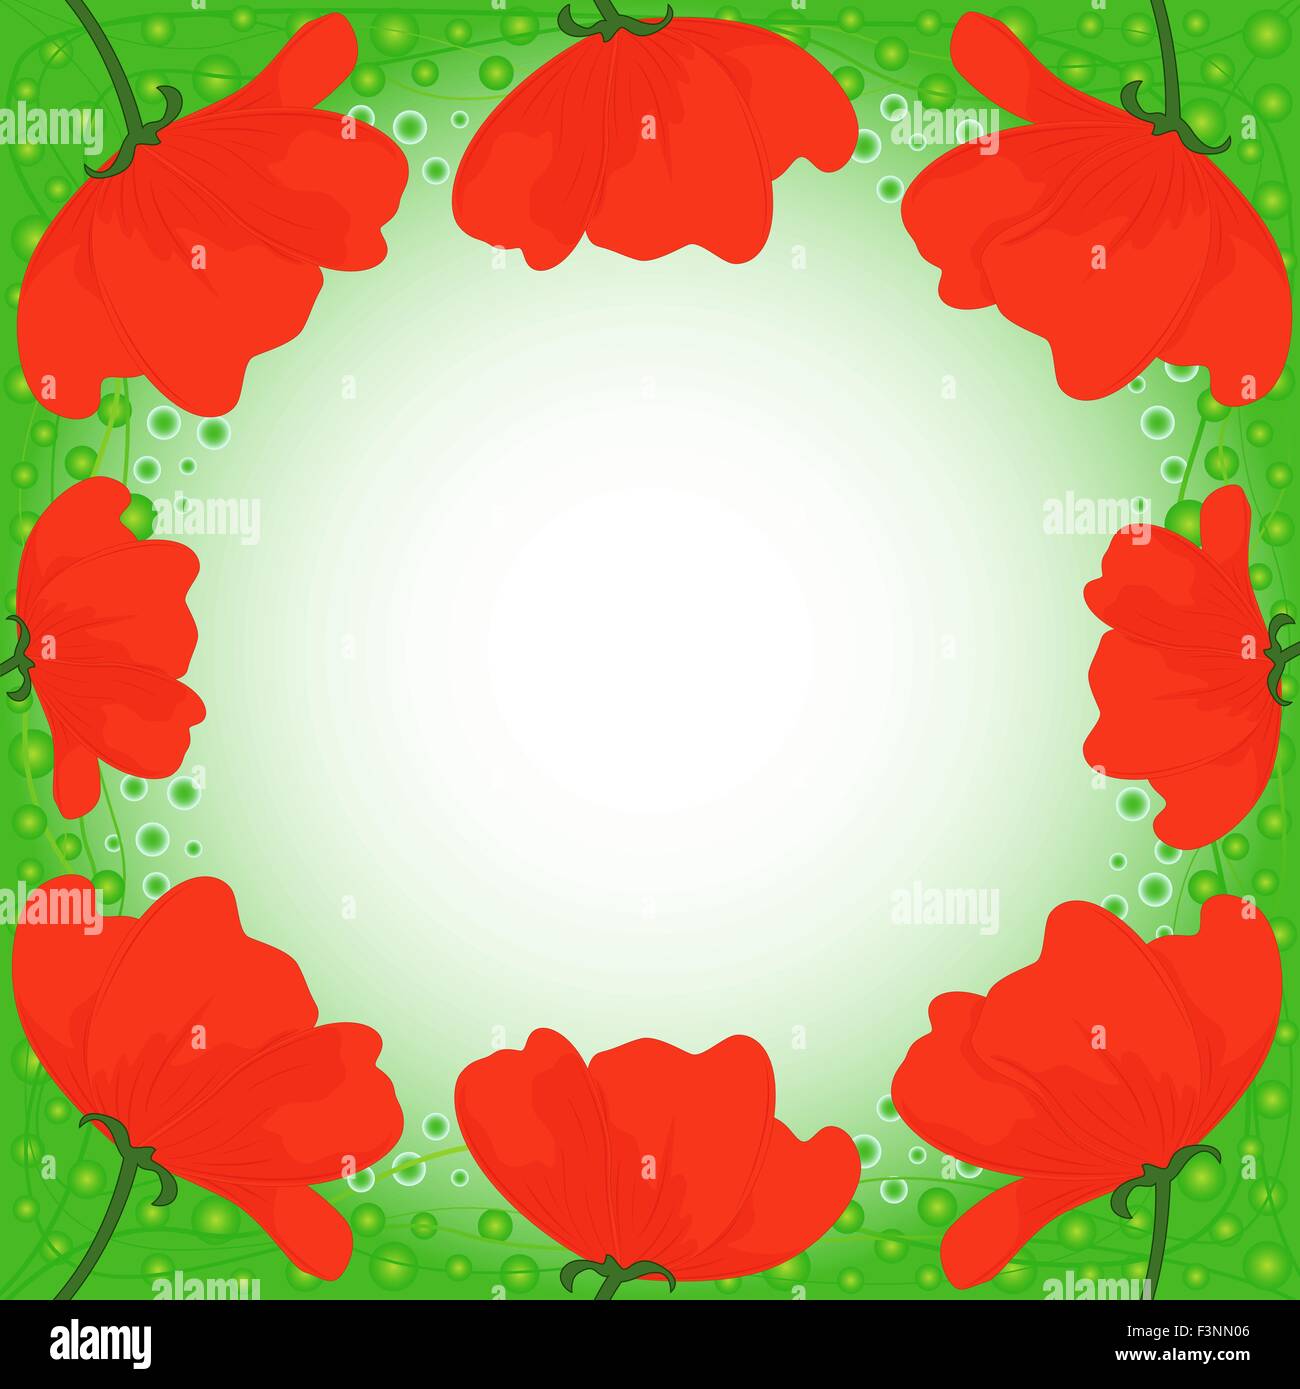 Carte postale avec plusieurs coquelicots rouges sur fond vert, dessin à la main vector illustration Illustration de Vecteur